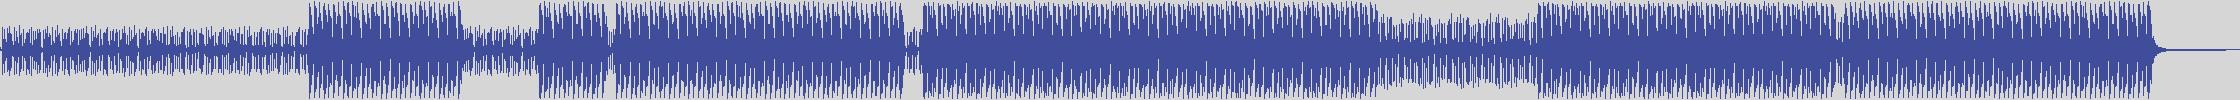 nf_boyz_records [NFY013] Dott. Zero - Mix Bongo Seven [Tribal Mix] audio wave form